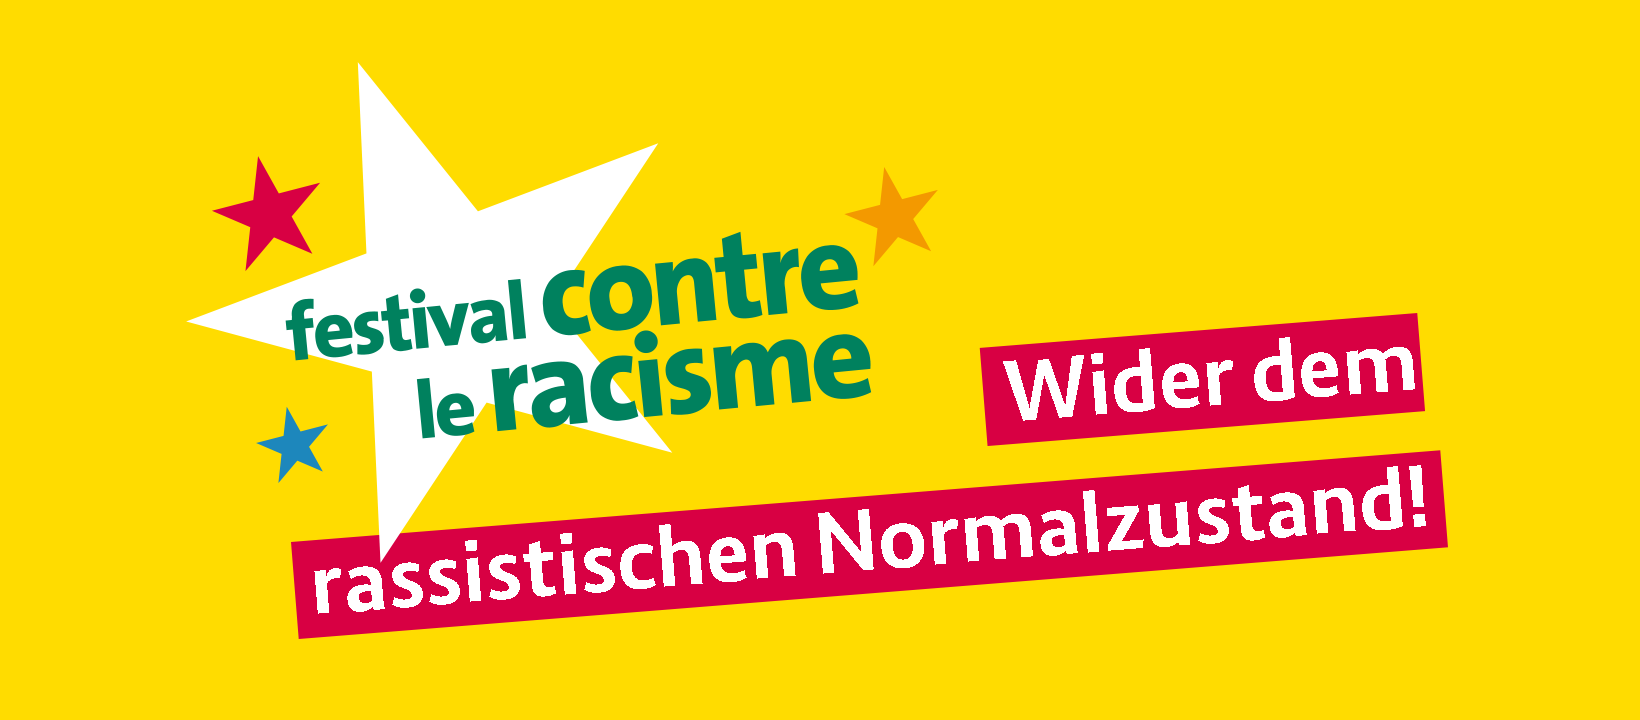 (c) Contre-le-racisme.de